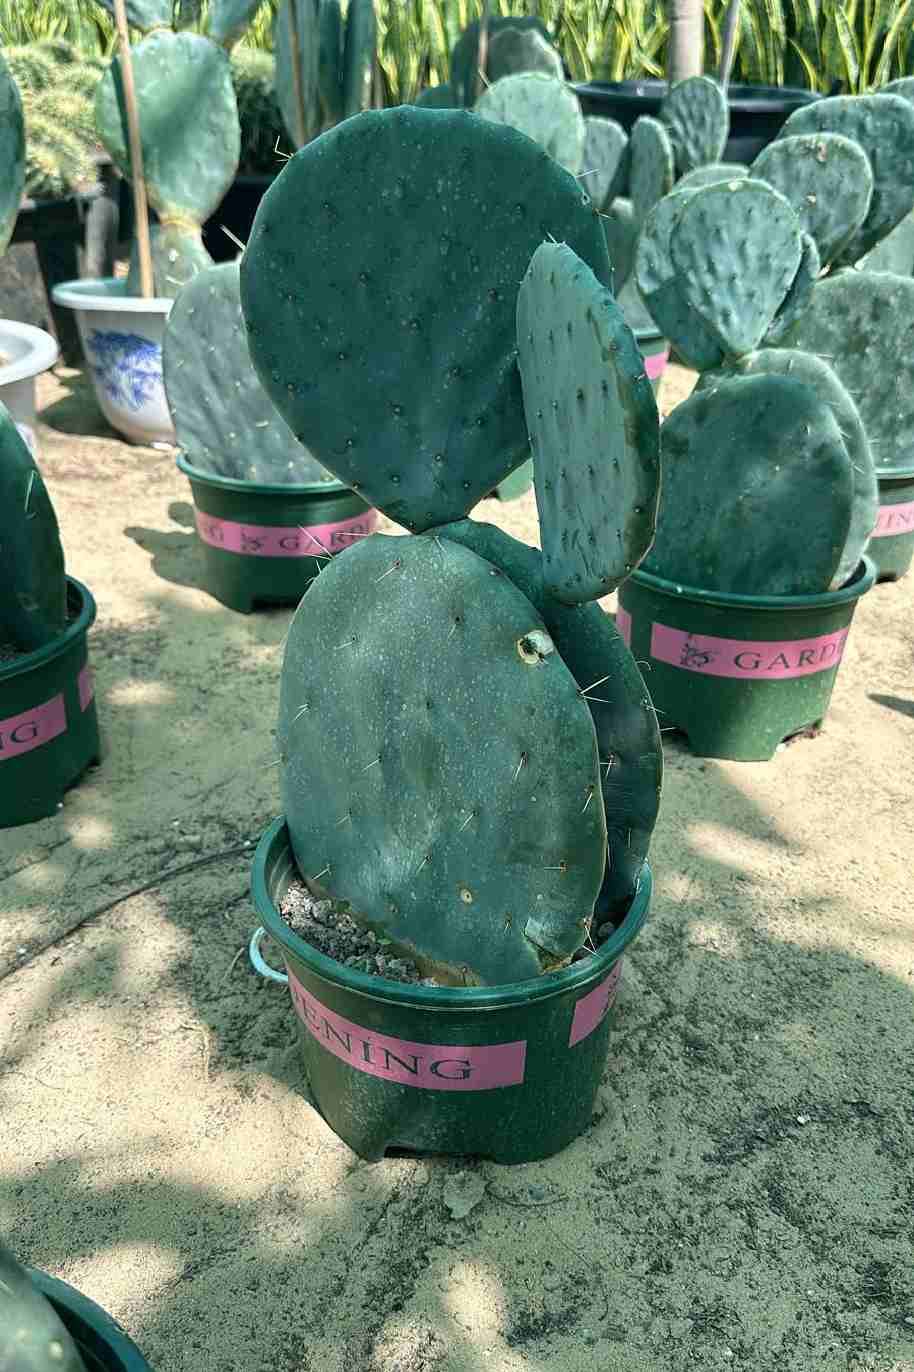 Wheel Cactus